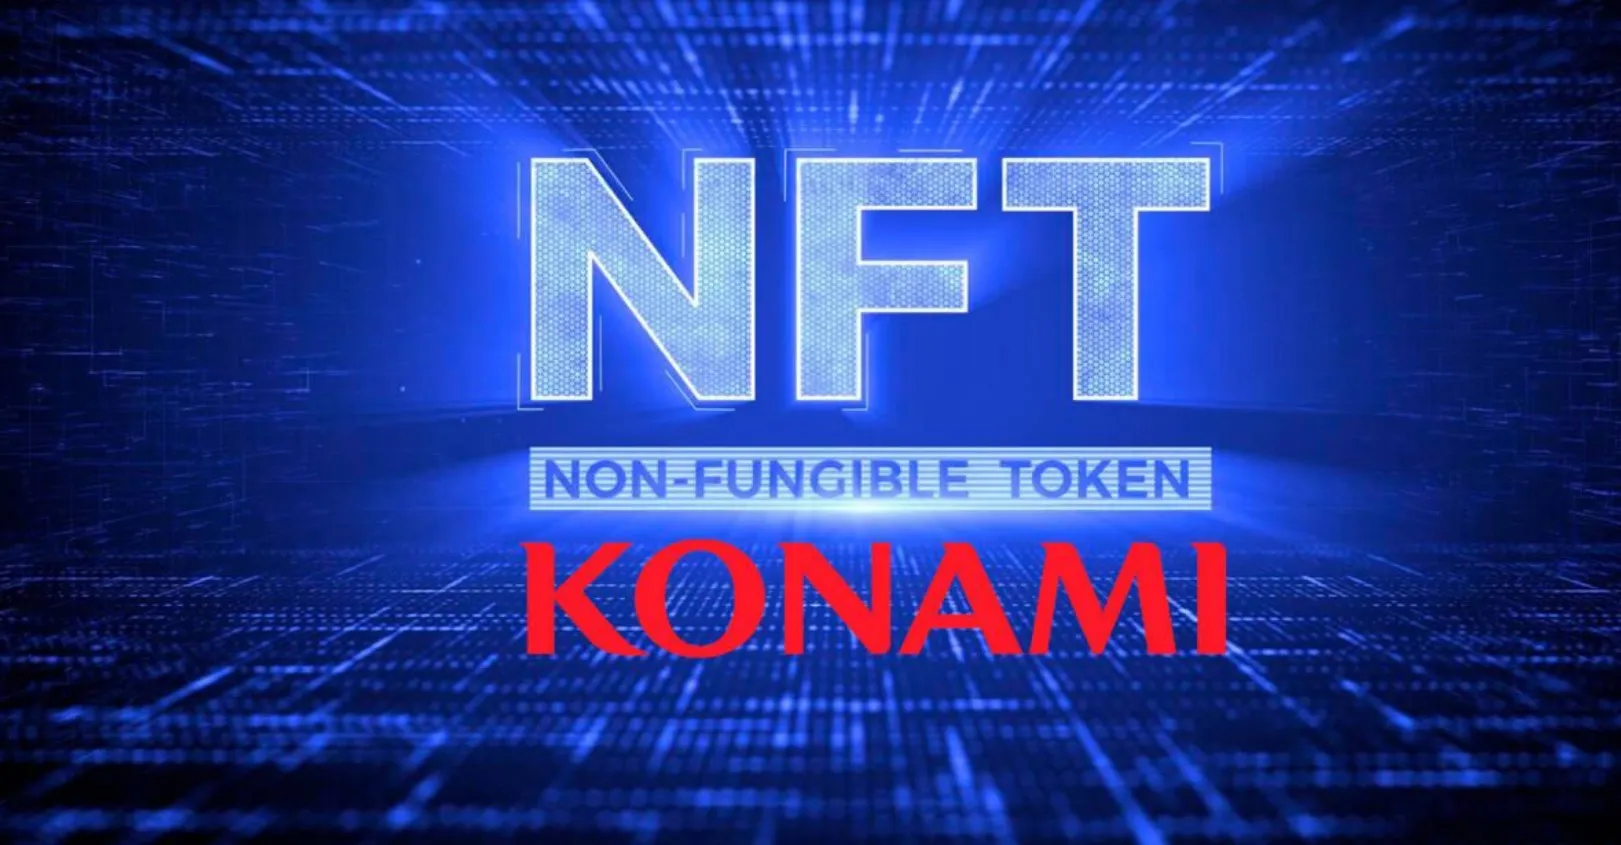 Konami NFT web3